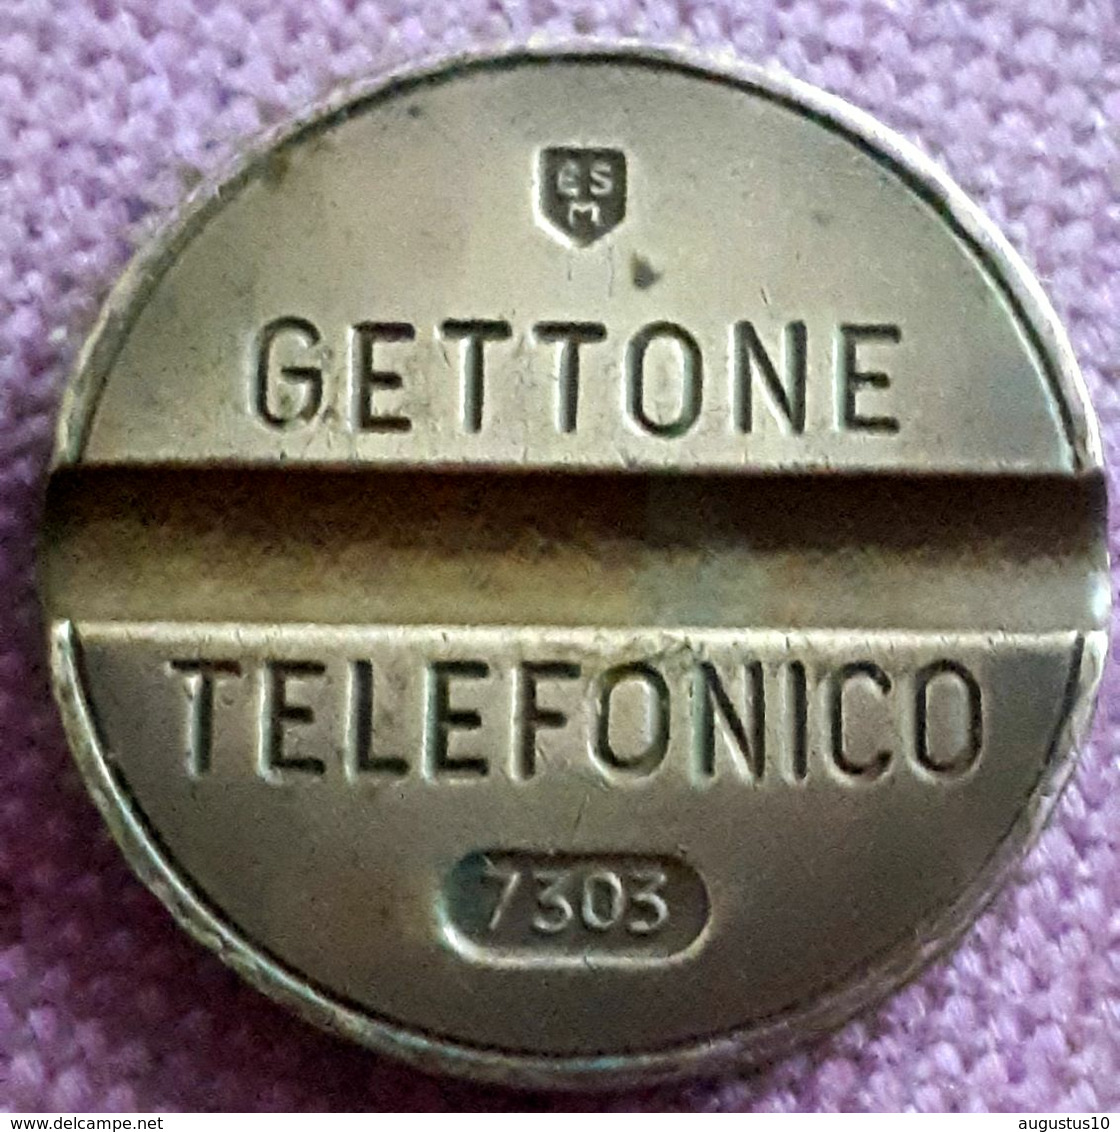 GETTONE TELEFONICO JETON ESM Milano SIGLIO 7303 - Monétaires/De Nécessité